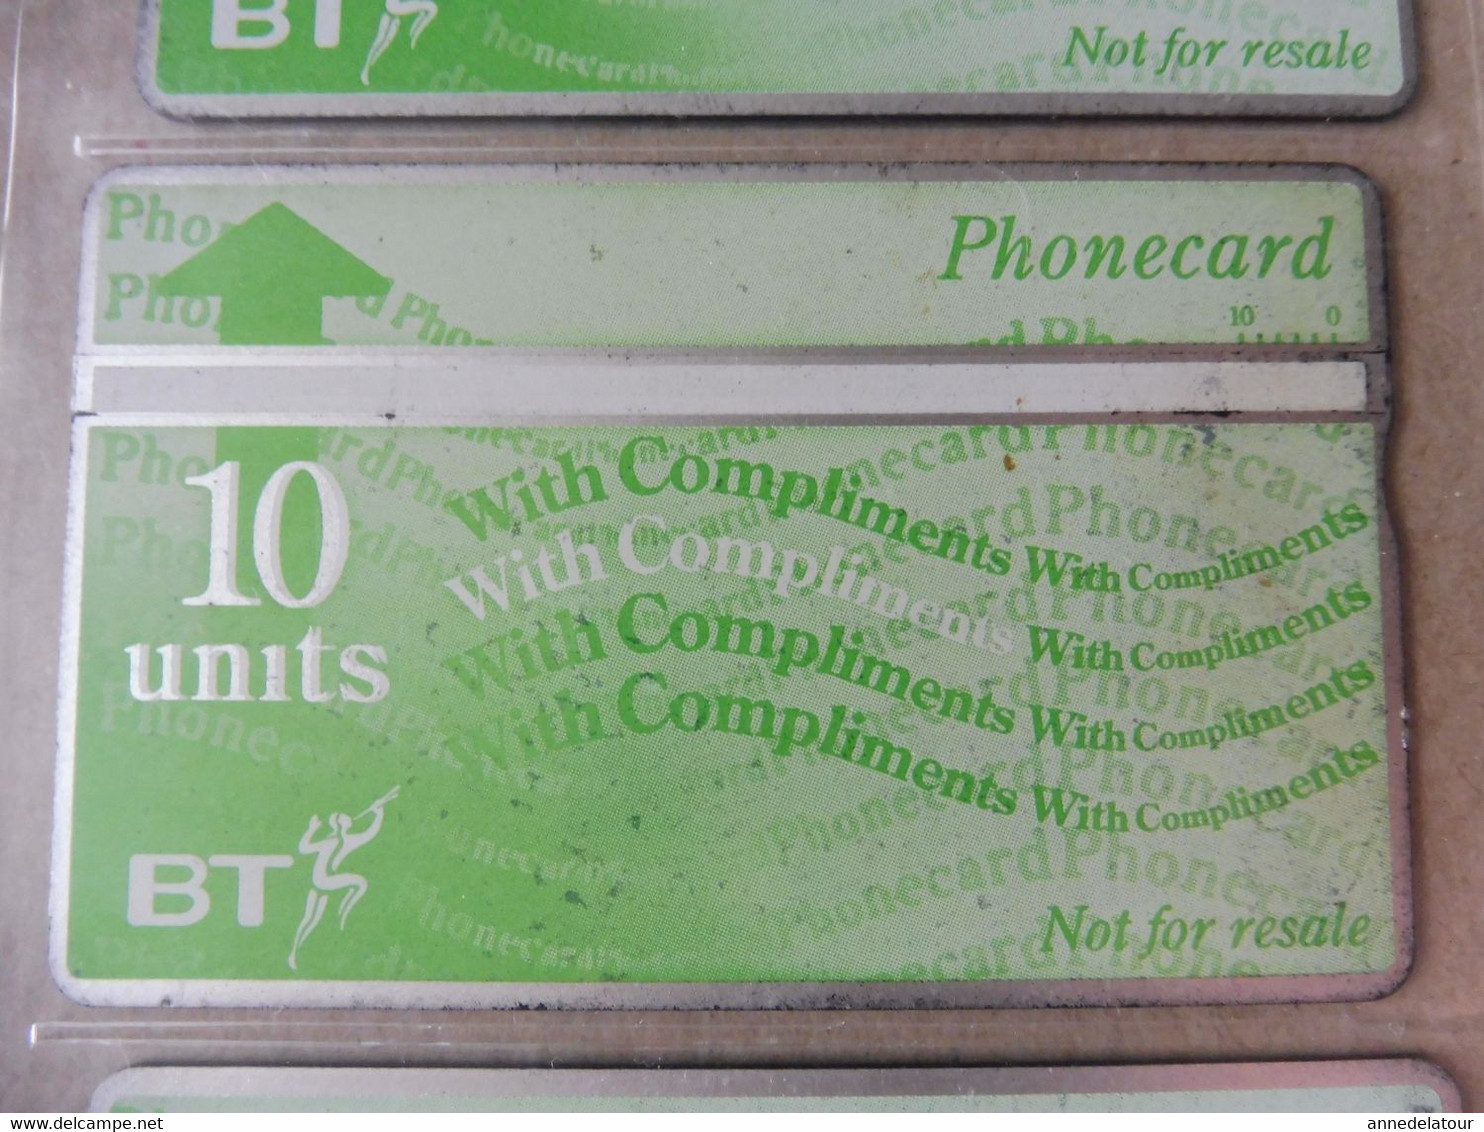 10 télécartes (cartes téléphoniques) PHONECARD  British TELECOM, For use in HM PRISON only , etc ,  origine Royaume-Uni